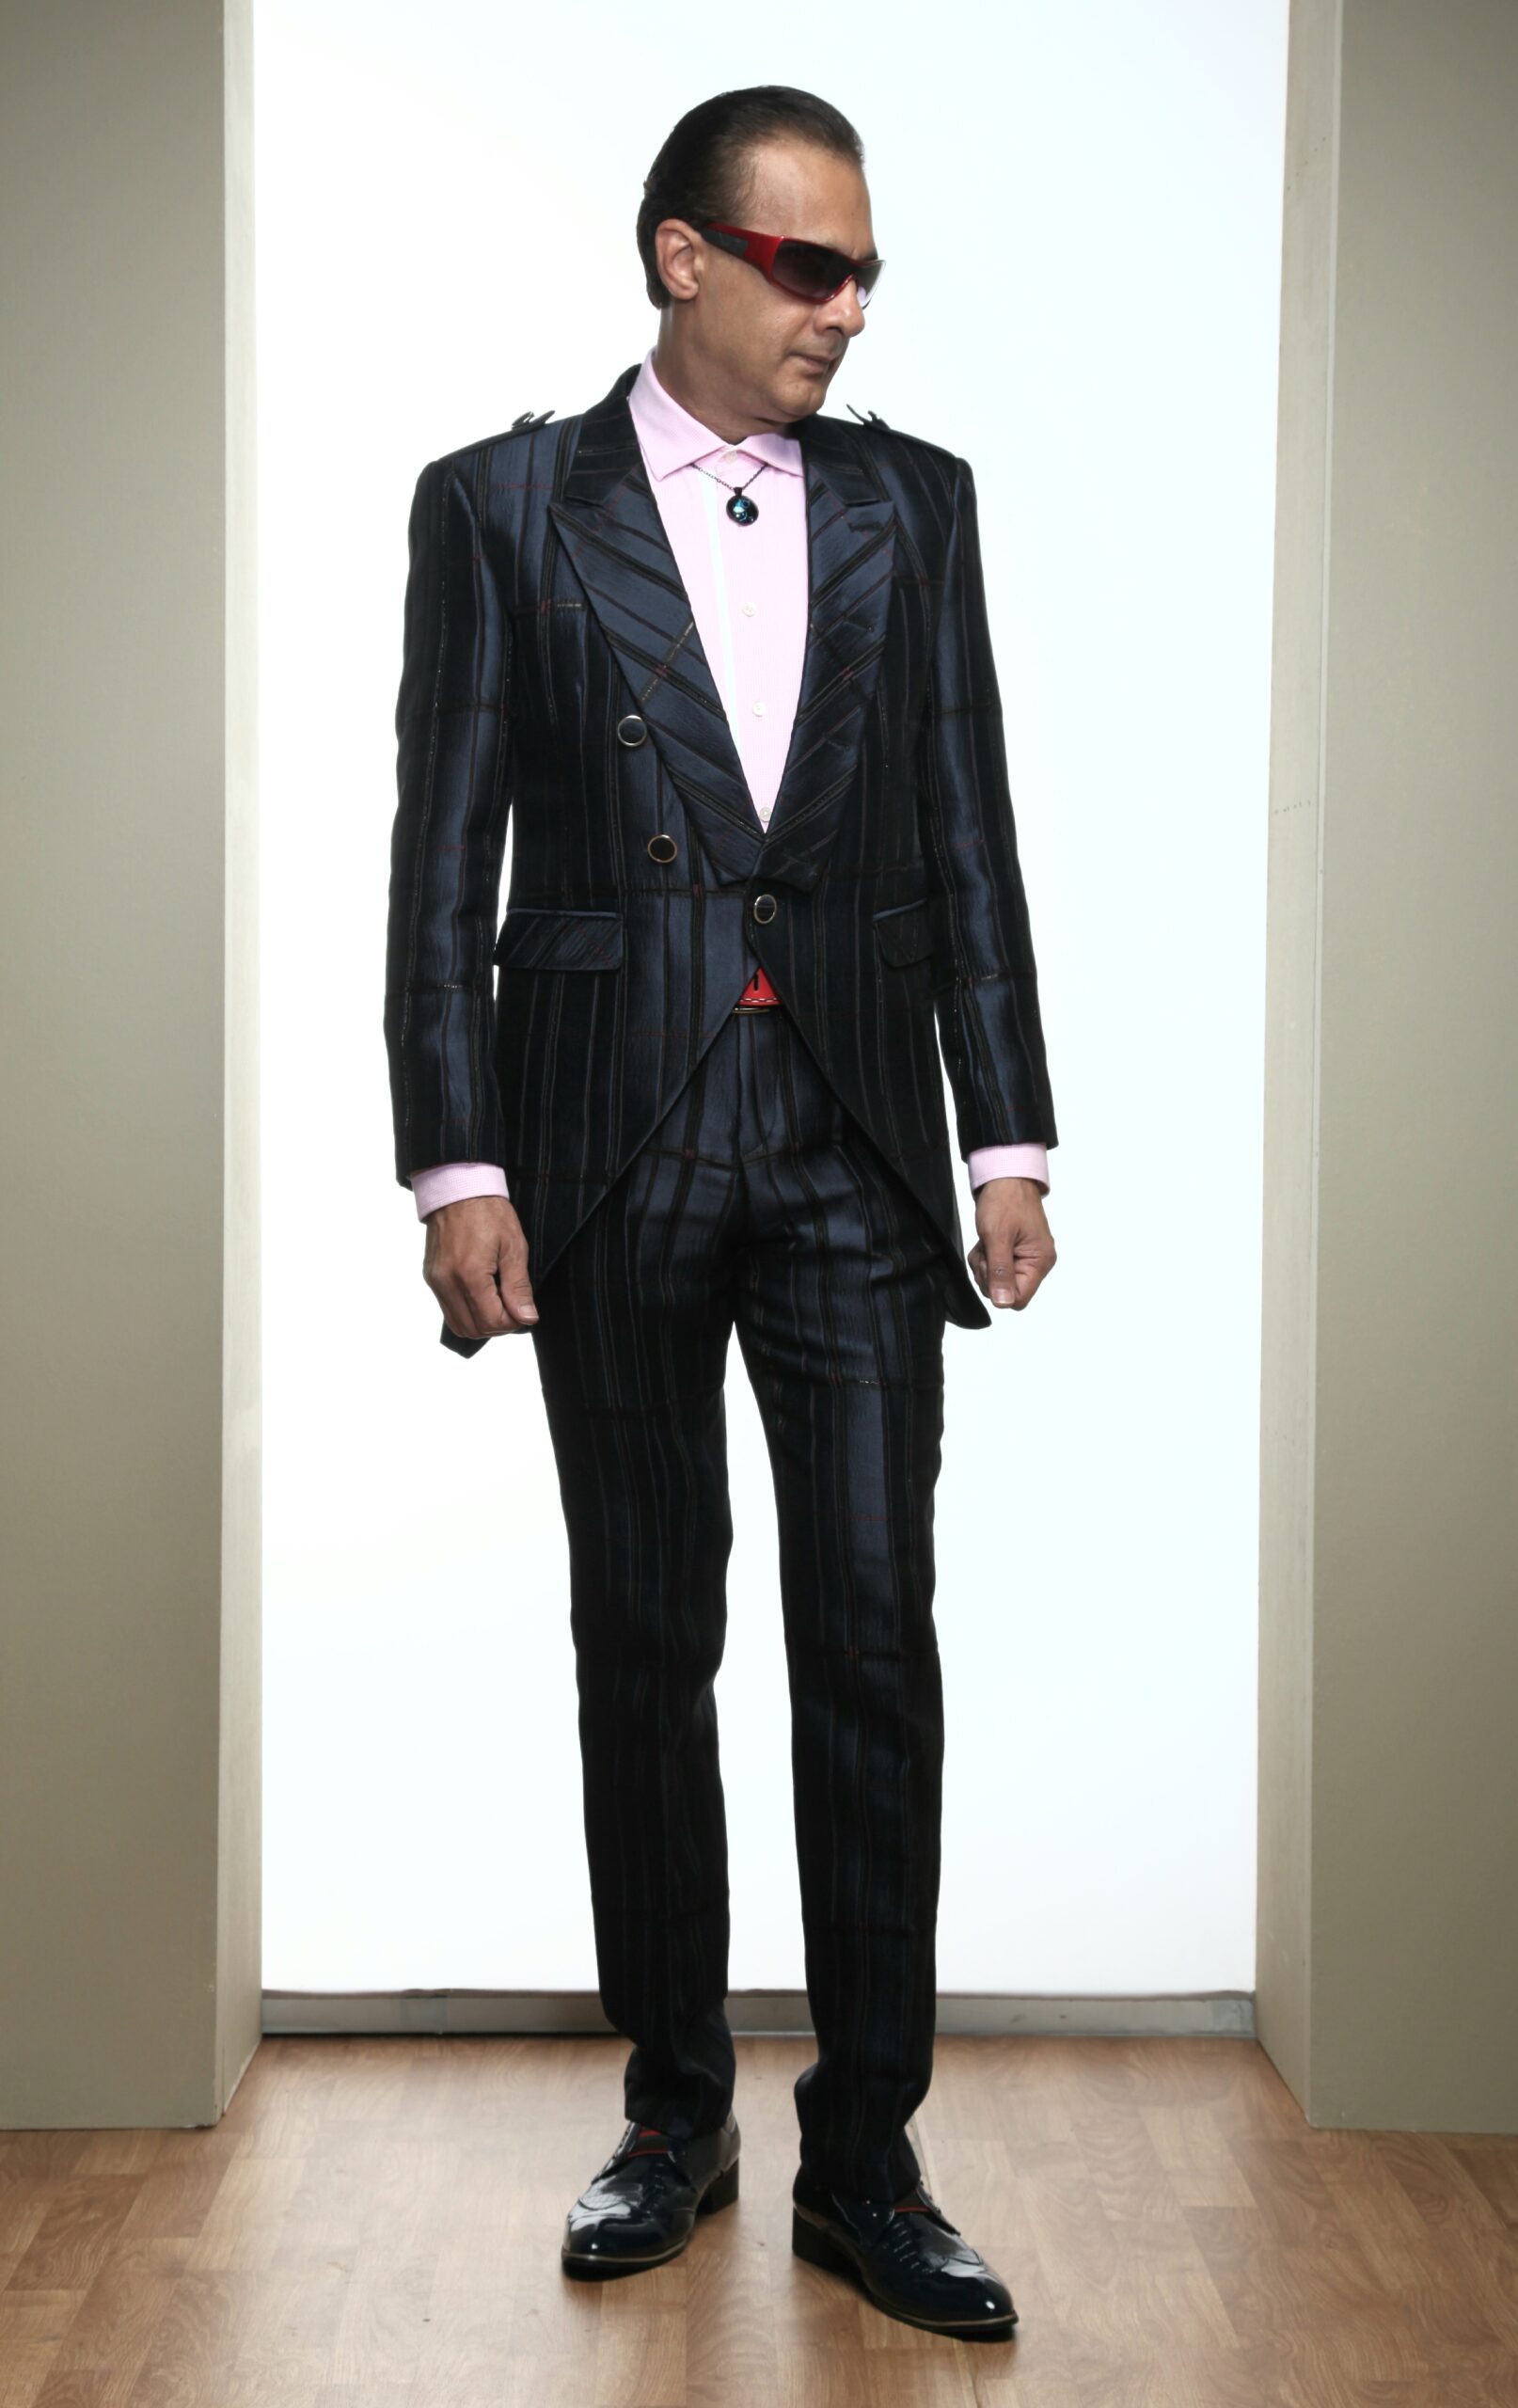 Mst 5020 03 Rent Rental Hire Tuxedo Suit Black Tie Suit Designer Suits Shop Tailor Tailors Singapore Wedding